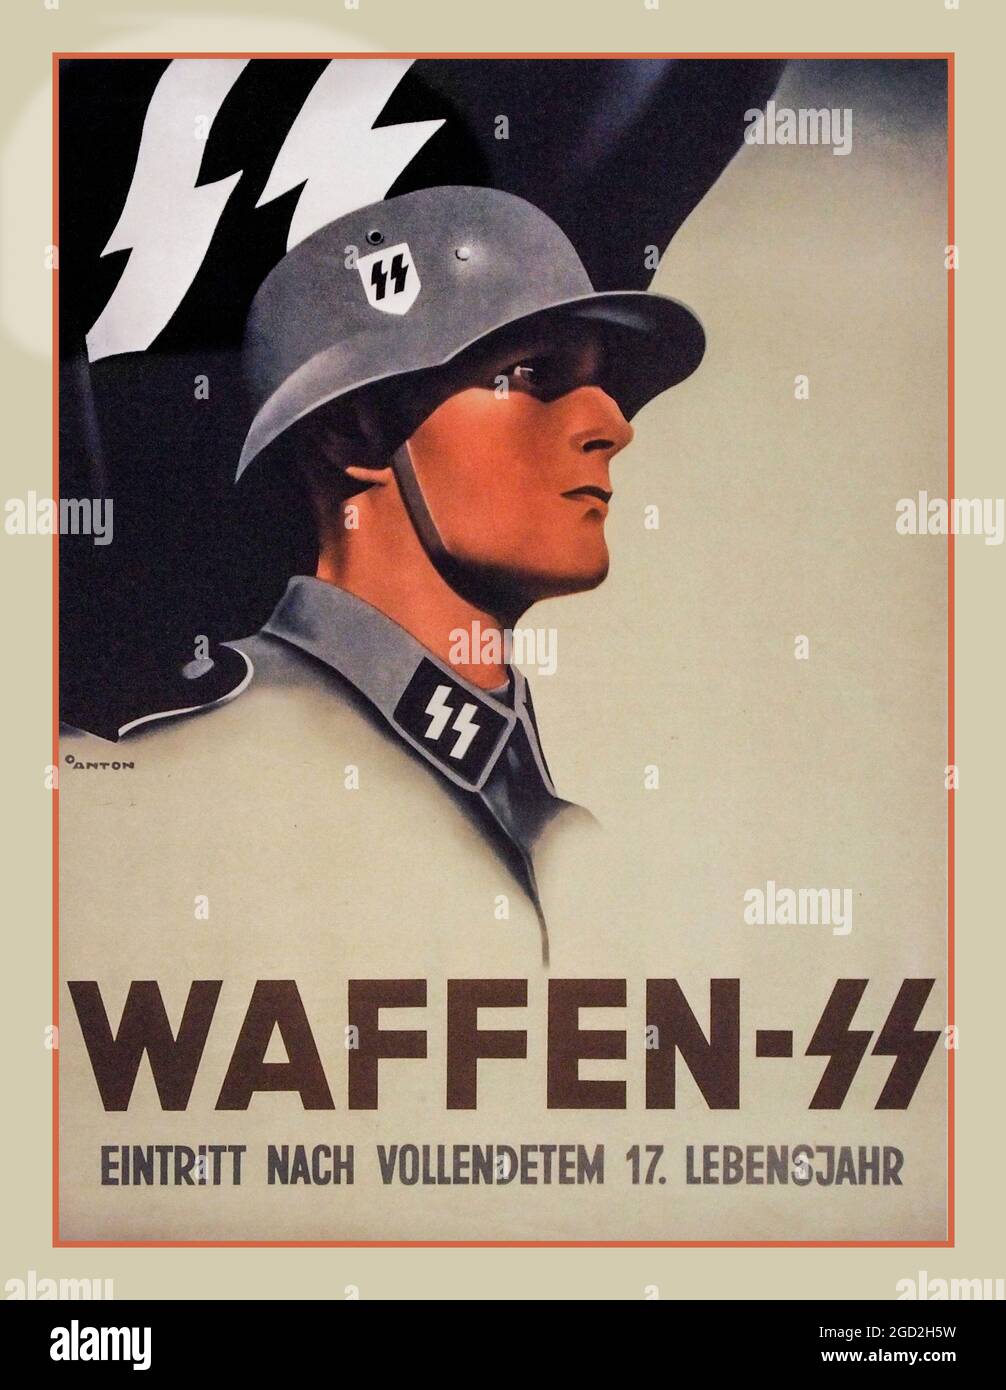 AFFICHE DE PROPAGANDE WAFFEN SS WW2 affiche de recrutement de propagande en temps de guerre allemande des années 1940 pour le célèbre poster de recrutement brutal nazi Waffen SS allemand, imprimé par Obpacher AG, Munich, 1940 (litho couleur) Banque D'Images